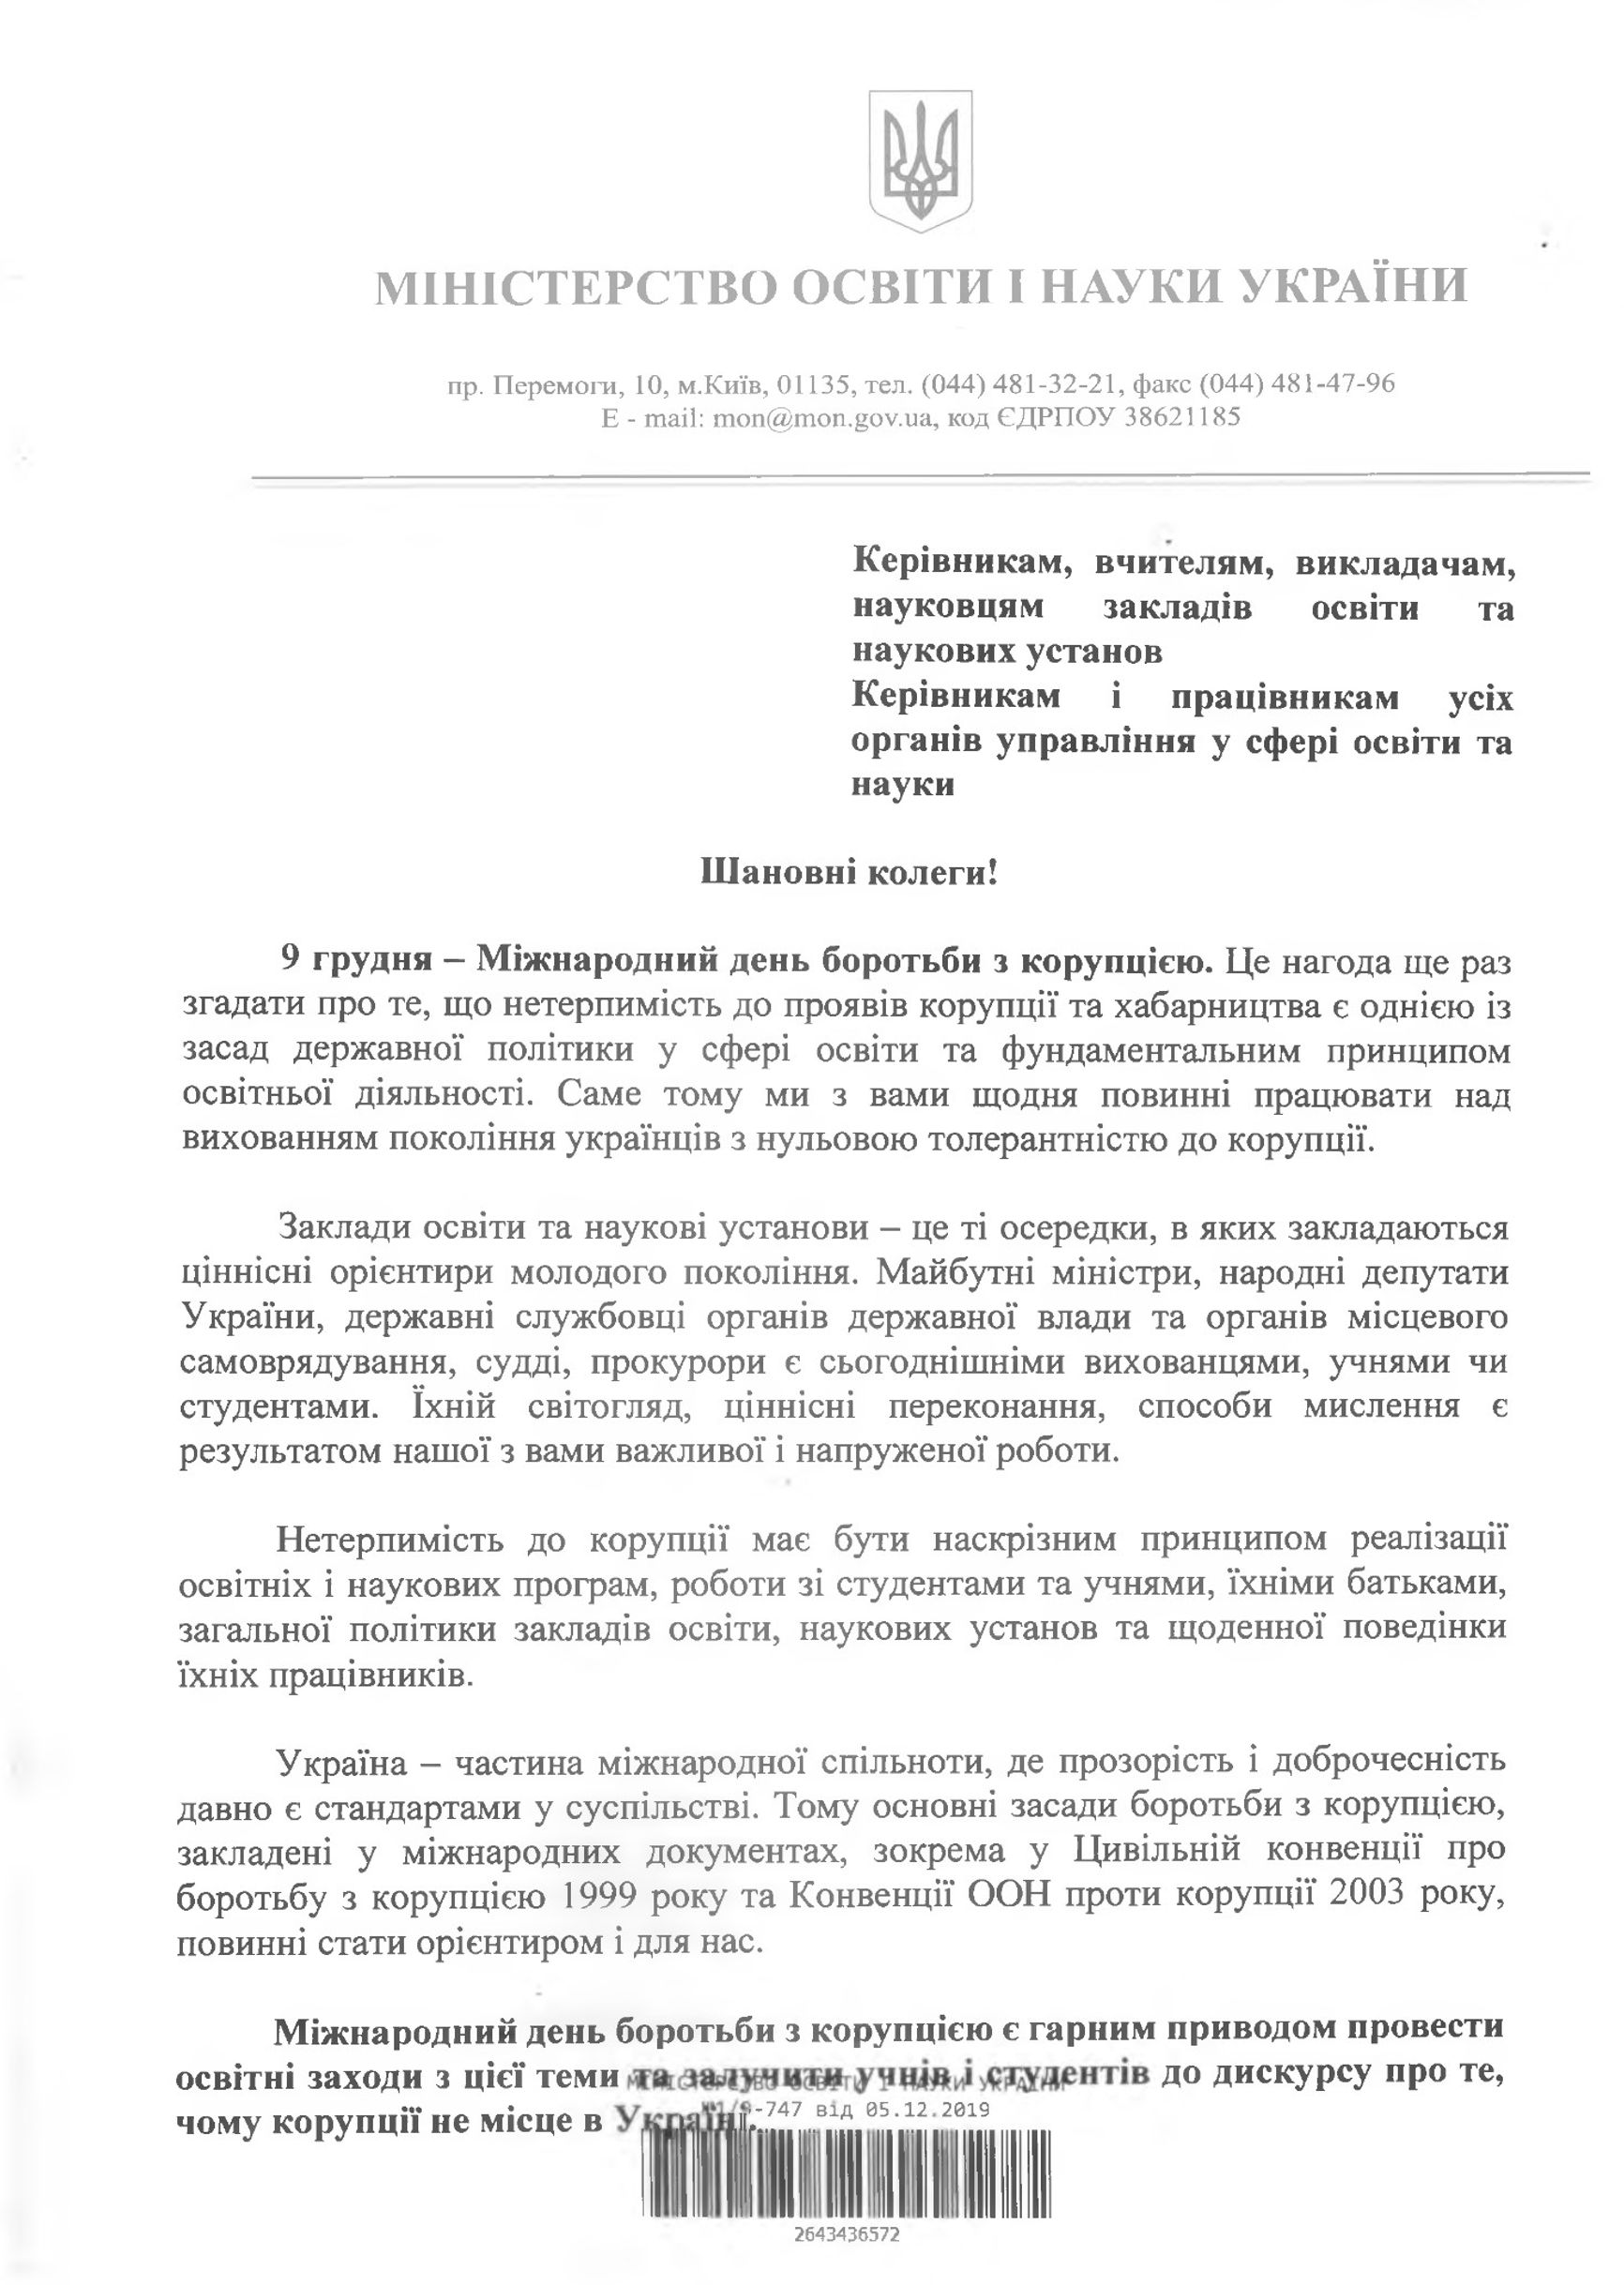 Подлинное официальное письмо Министерства просвещения и науки Украины